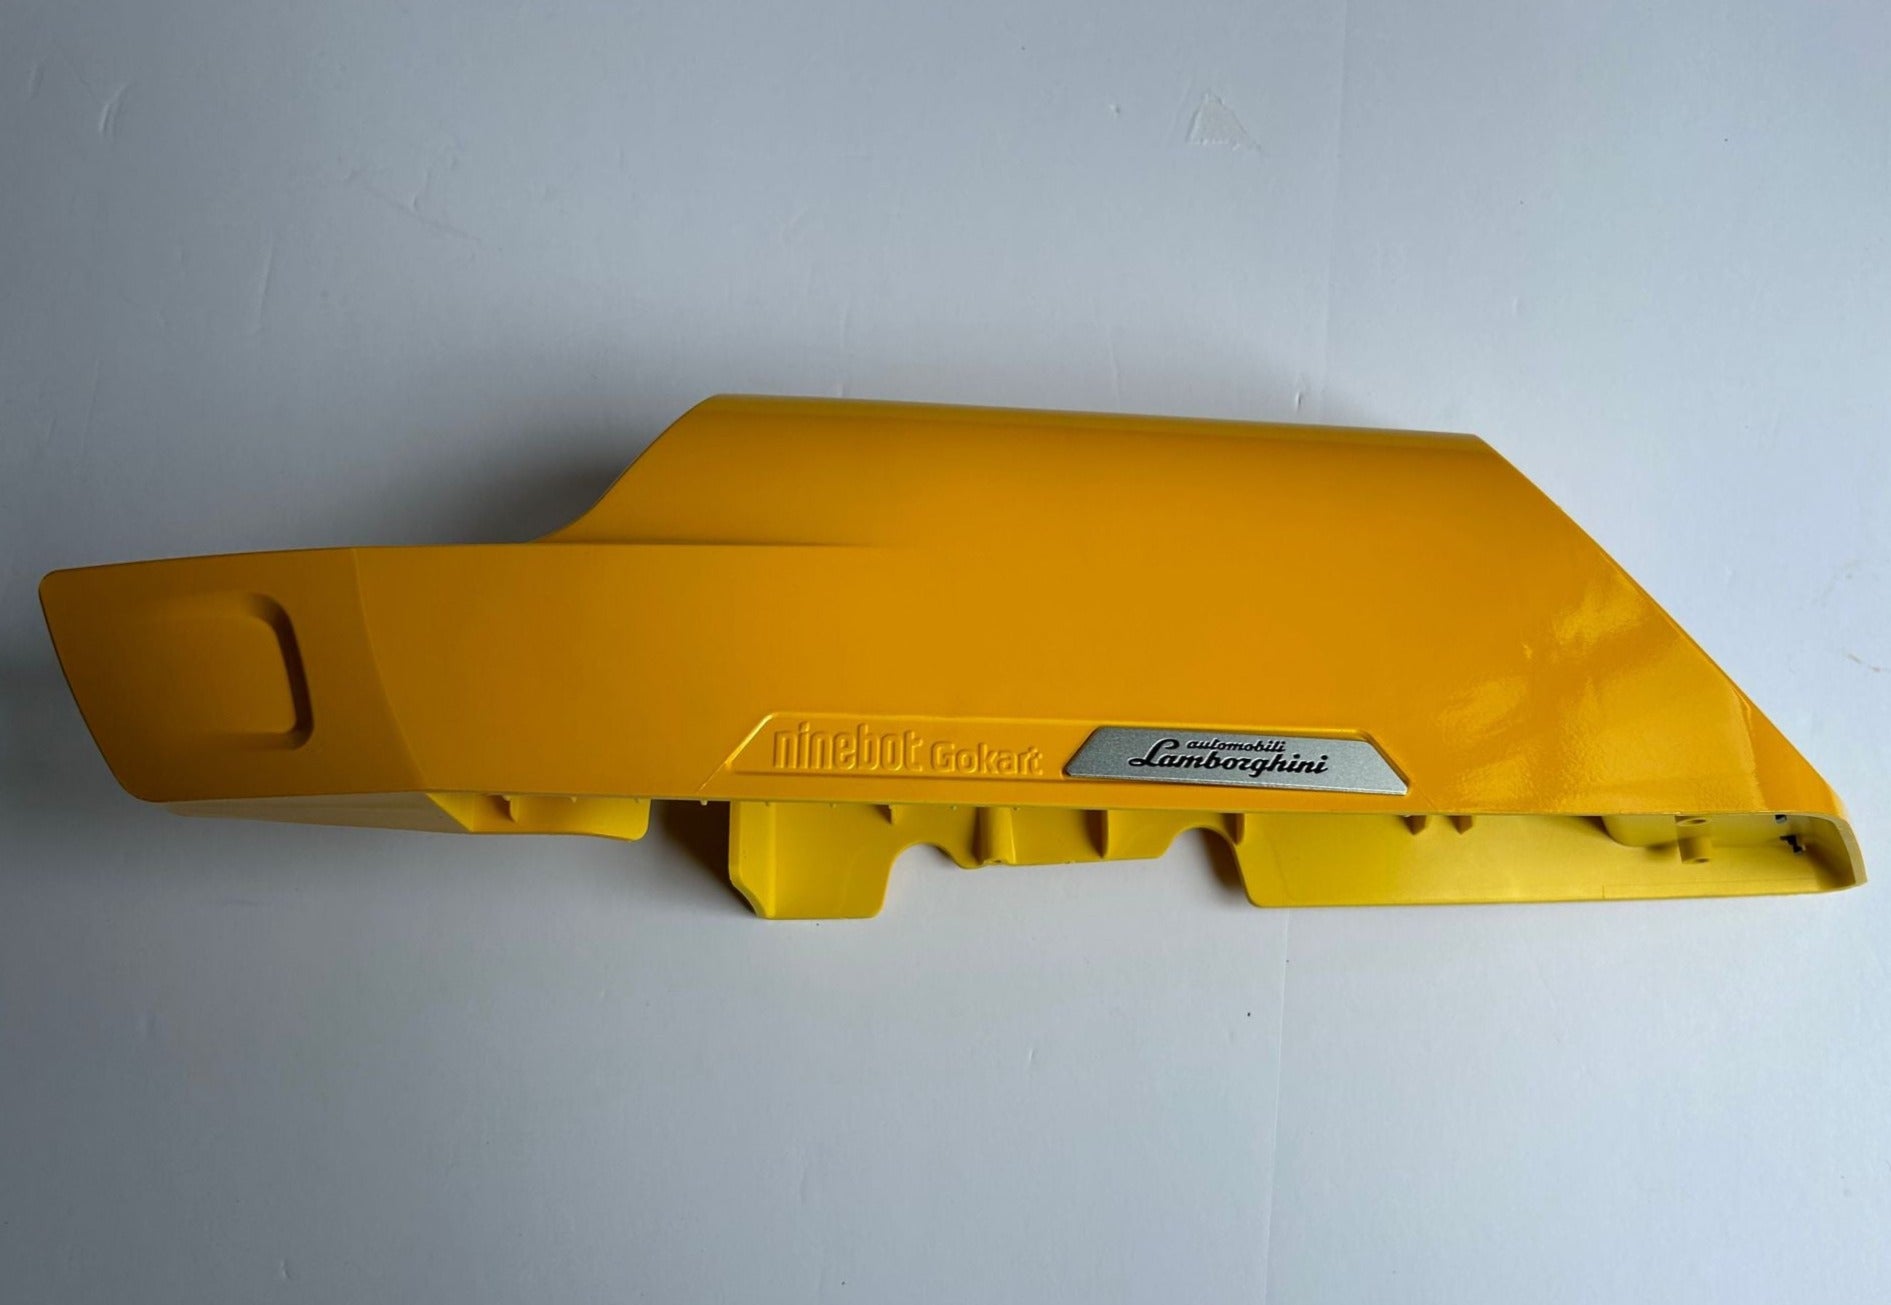 Right protective box for Ninebot Gokart Pro - Lamborghini